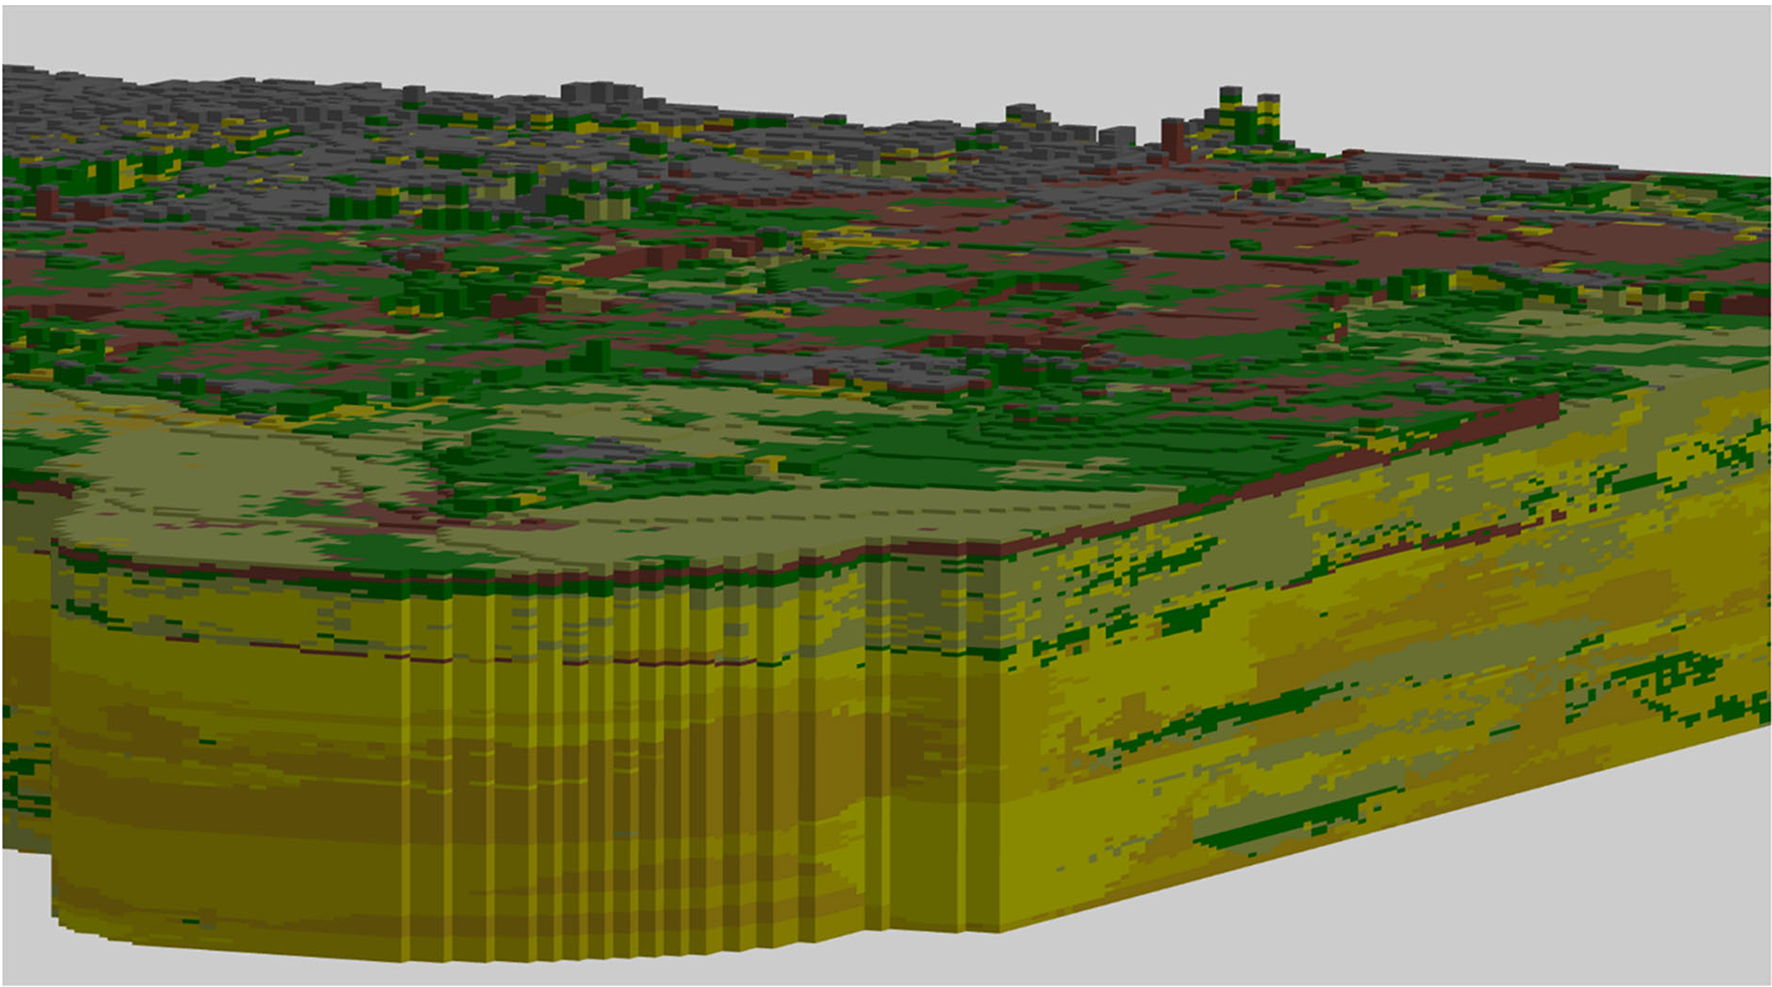 Figuur 3.4: 3D weergave van een voxelmodel waarbij de kleuren van de voxels de lithoklasse weergeven. De lithoklasse indeling in de voxels is het resultaat van een ruimtelijke interpolatie van de lithoklassen in de geïnterpreteerde boormonsterbeschrijvingen binnen de verschillende geologische eenheden.